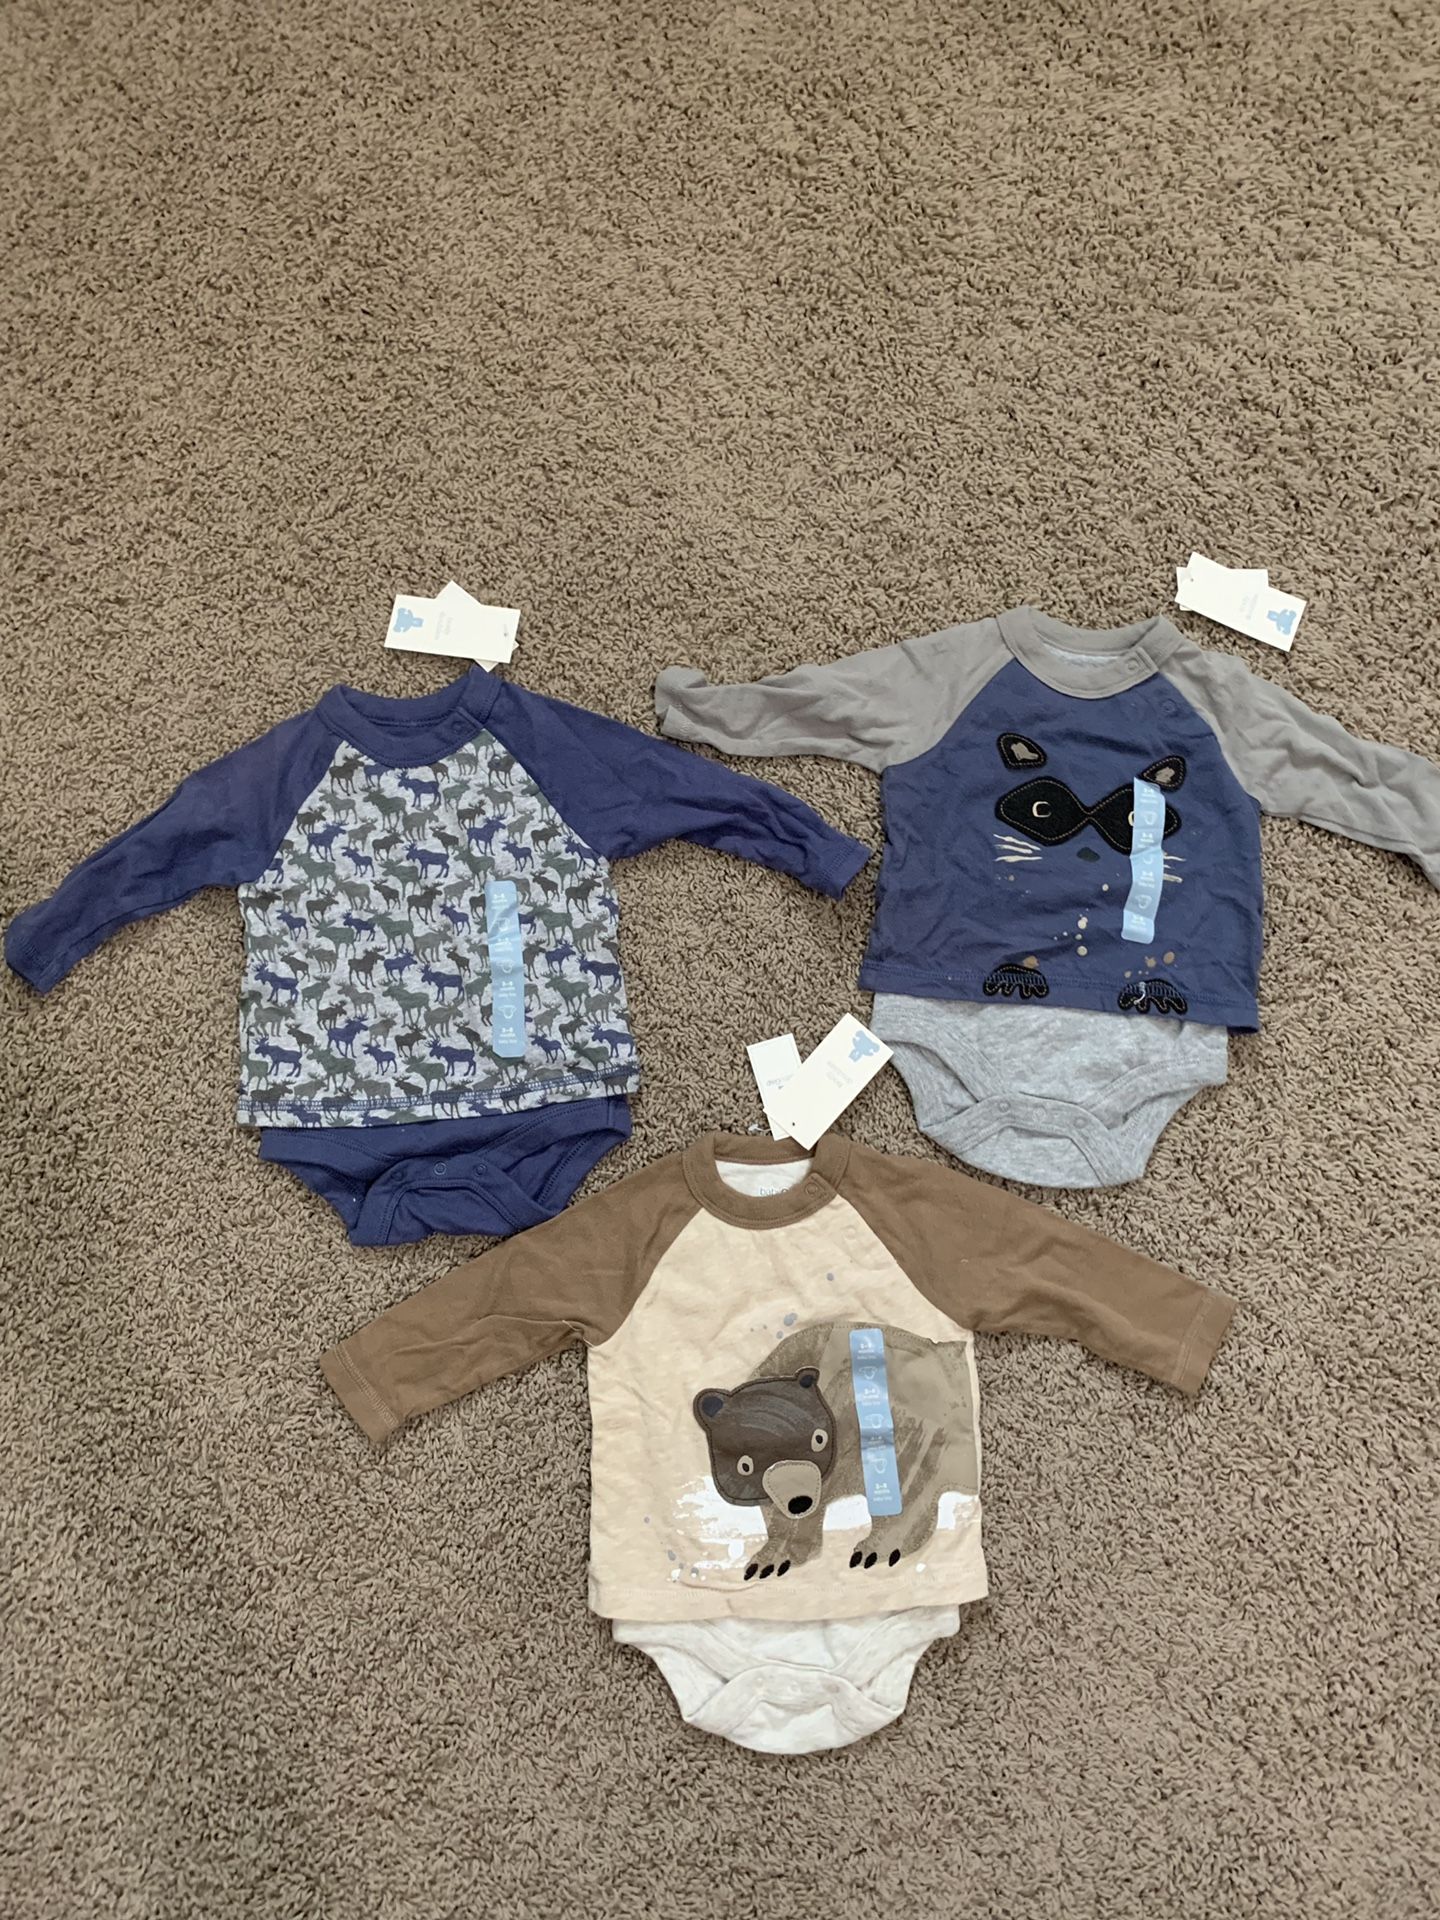 Baby gap clothes